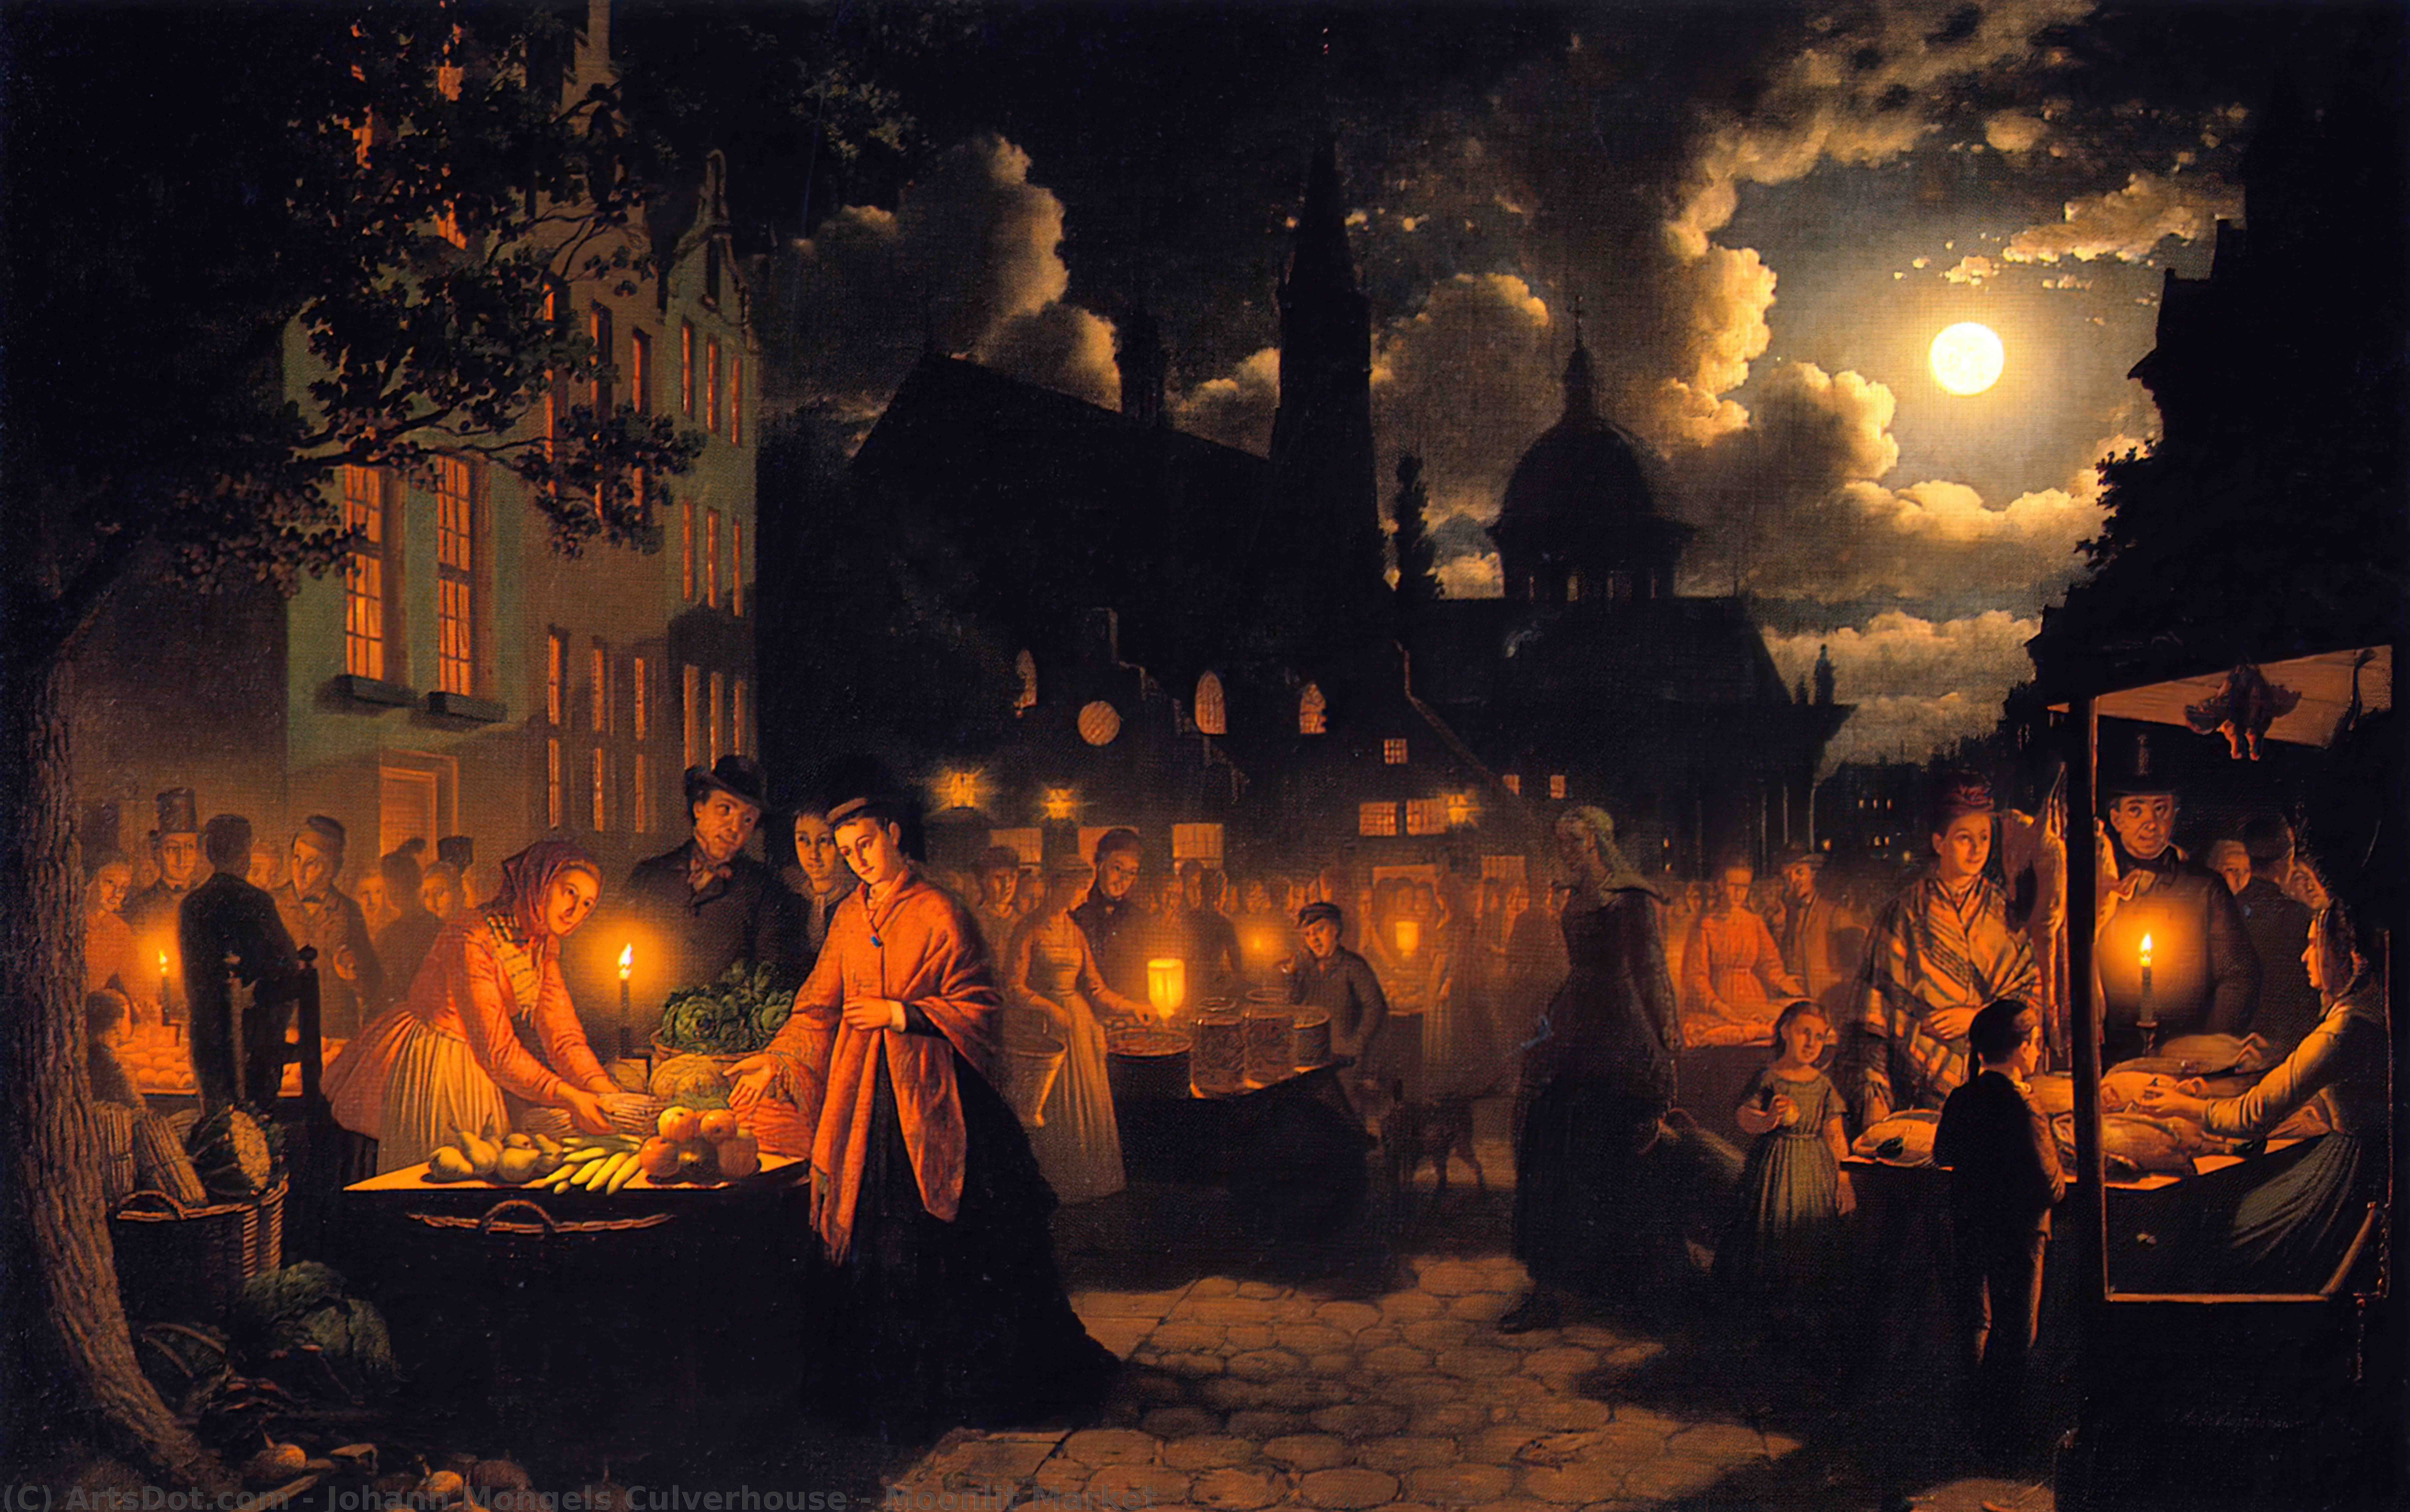 WikiOO.org - Encyclopedia of Fine Arts - Malba, Artwork Johann Mongels Culverhouse - Moonlit Market